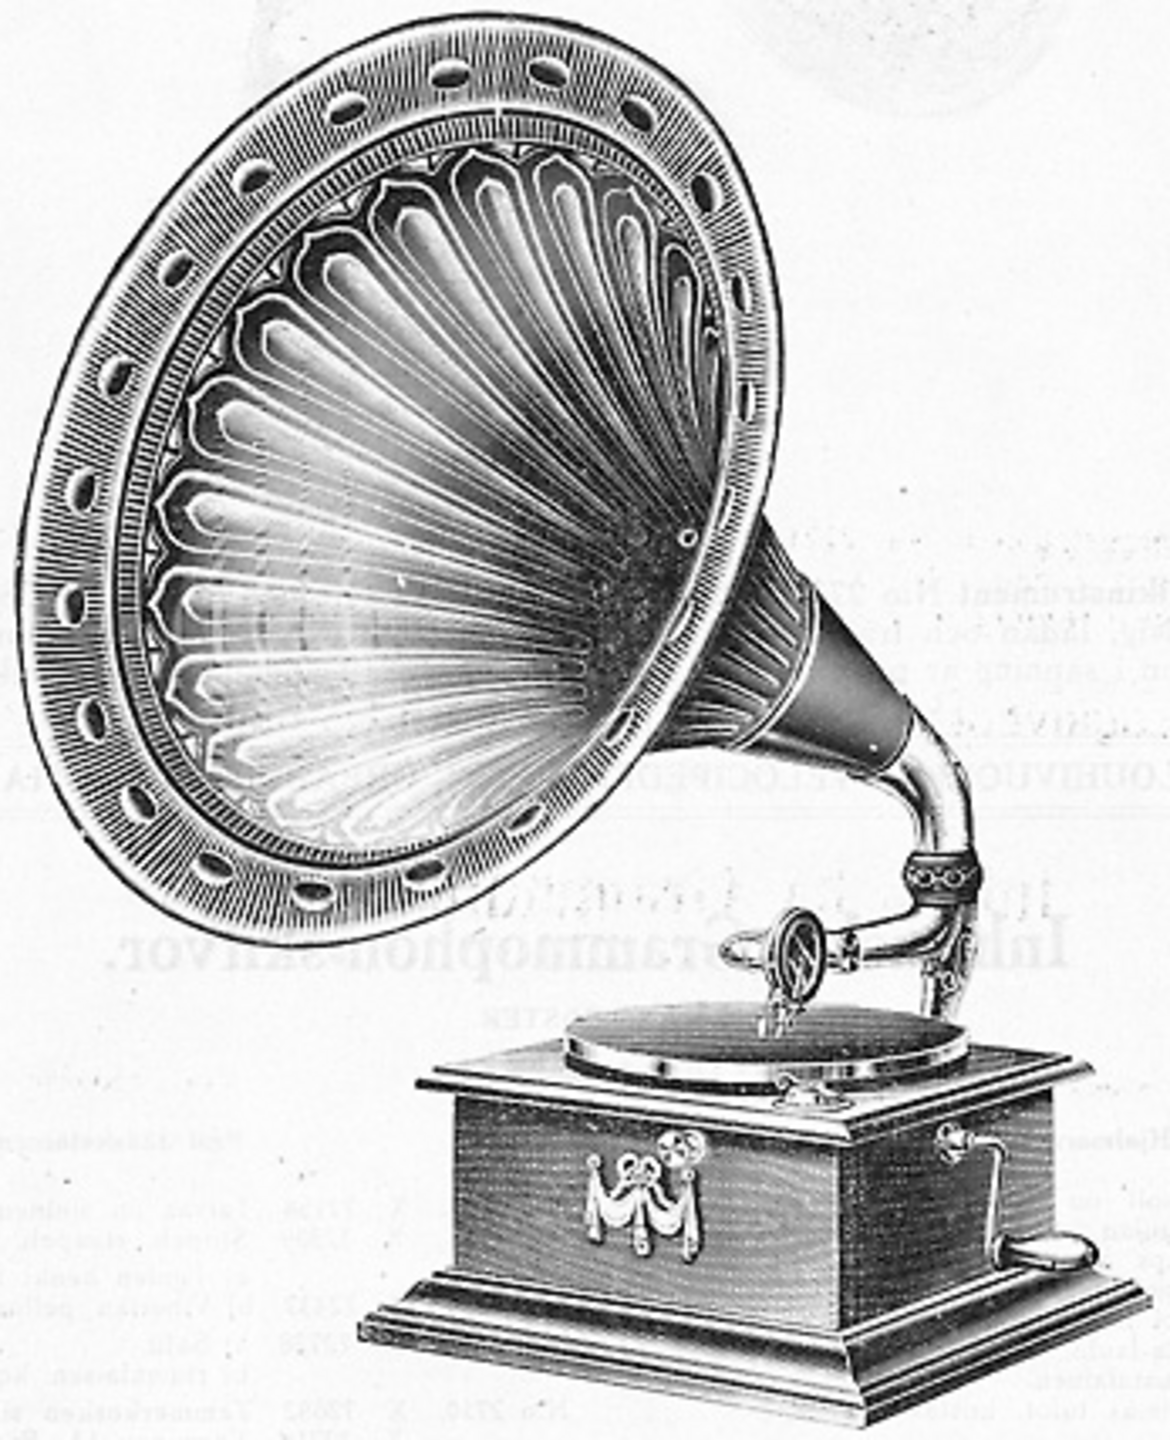 Grammophon, 1914